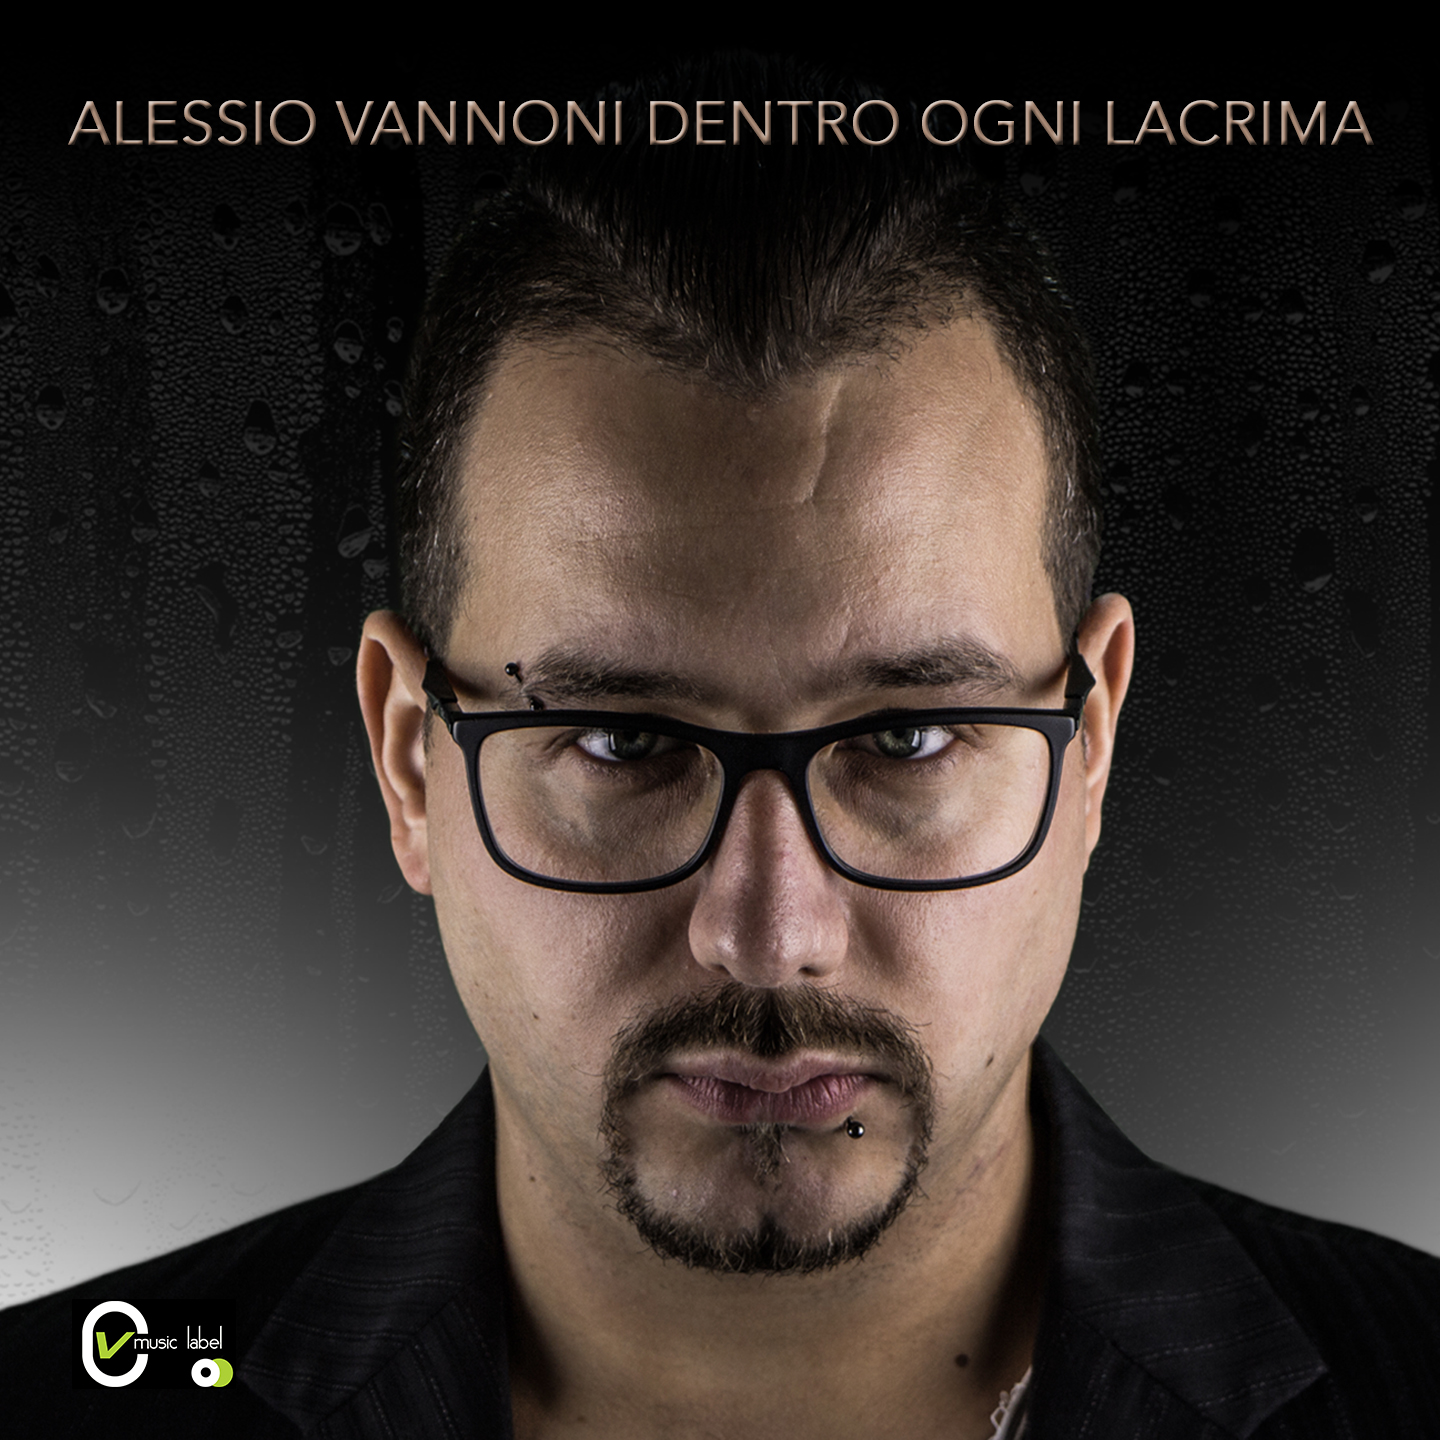 Il cantautore versiliese Alessio Vannoni in radio dal 16 Febbraio con il singolo “Dentro ogni lacrima”